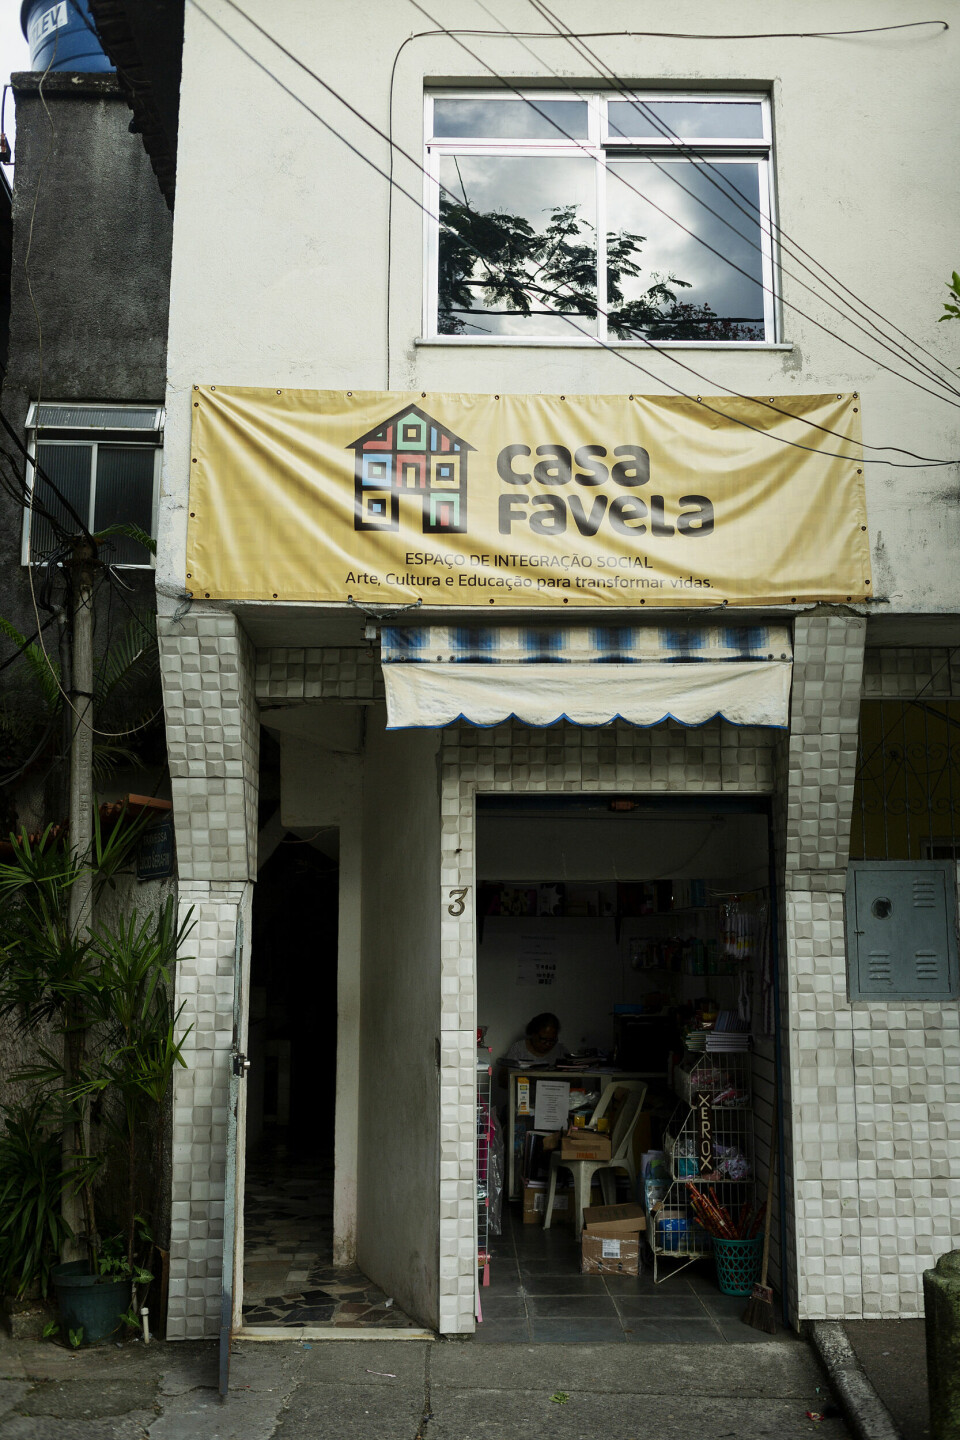 Et fristed: Rennan Leta beskriver Casa Favela som et fysisk sted og en organisasjon.